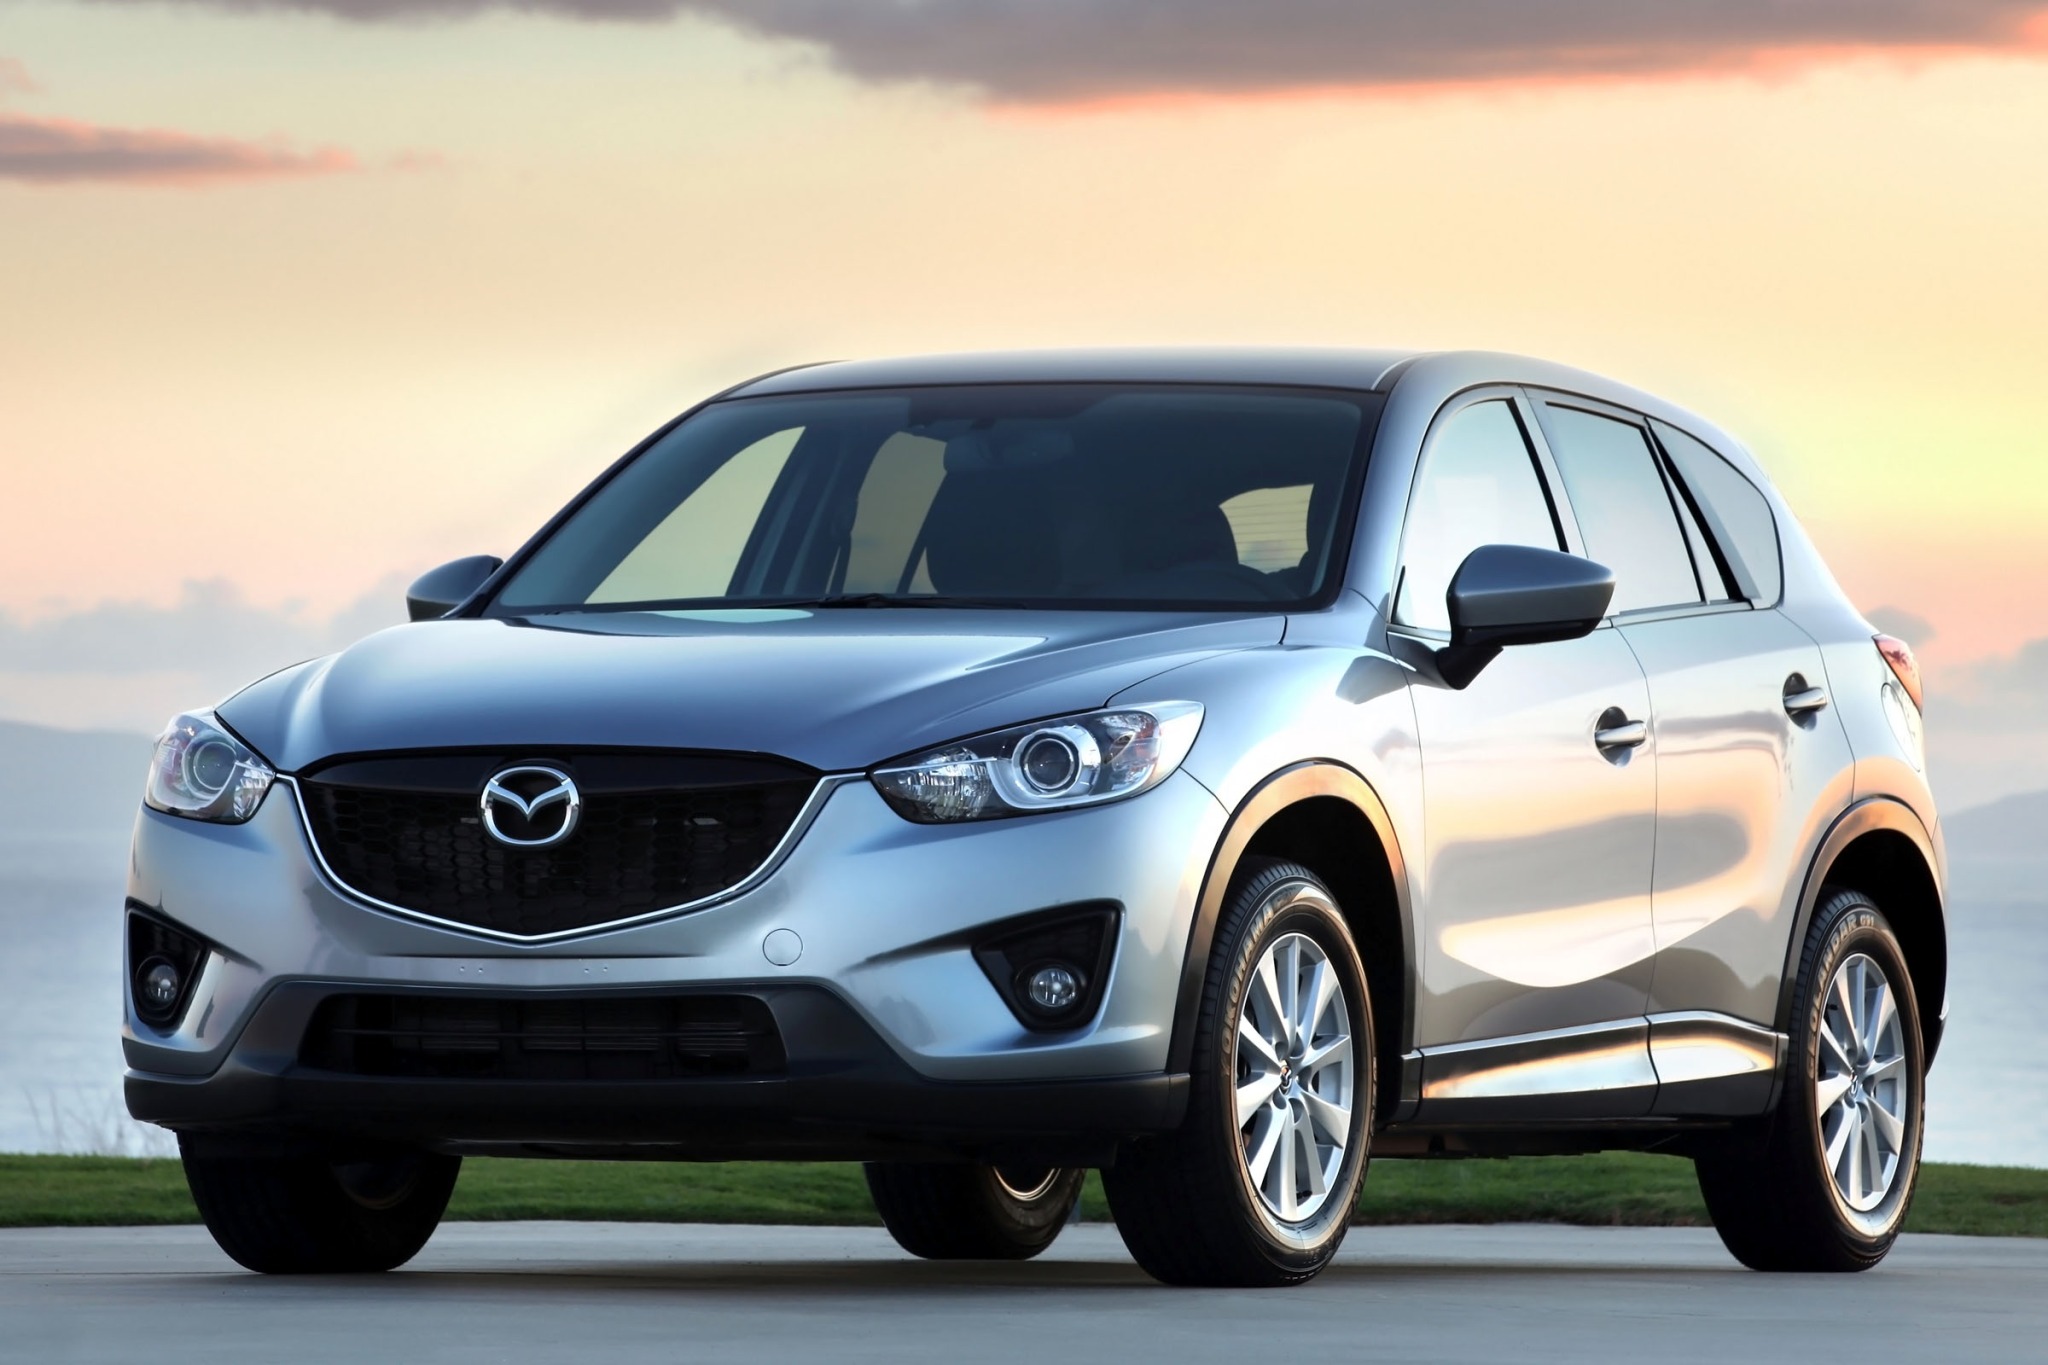 Mazda CX5 2015 novedosa, eficiente y muy segura. Lista de Carros